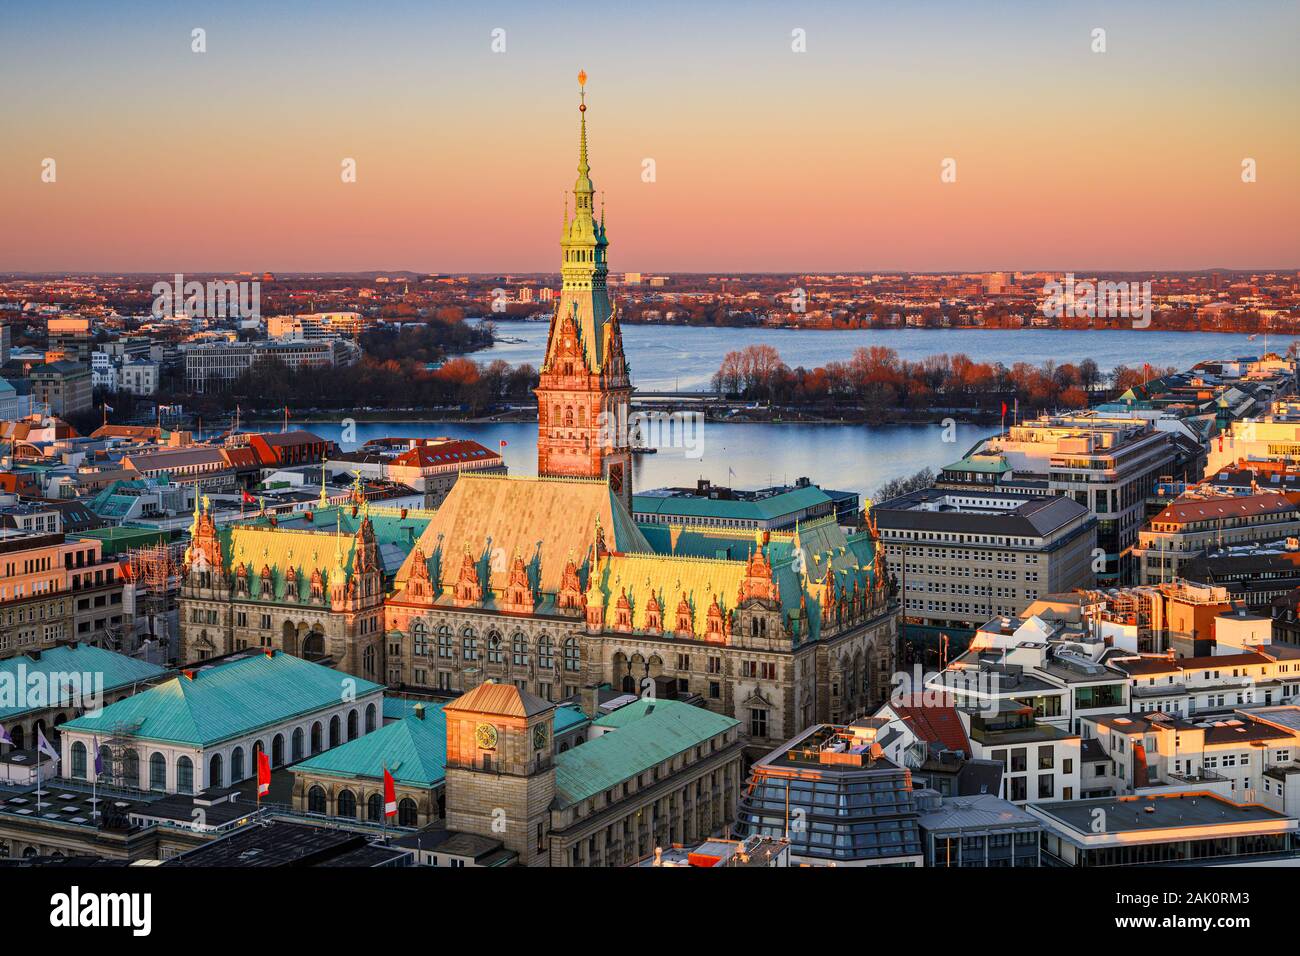 Vue aérienne de l'Hôtel de ville de Hambourg, Allemagne Banque D'Images